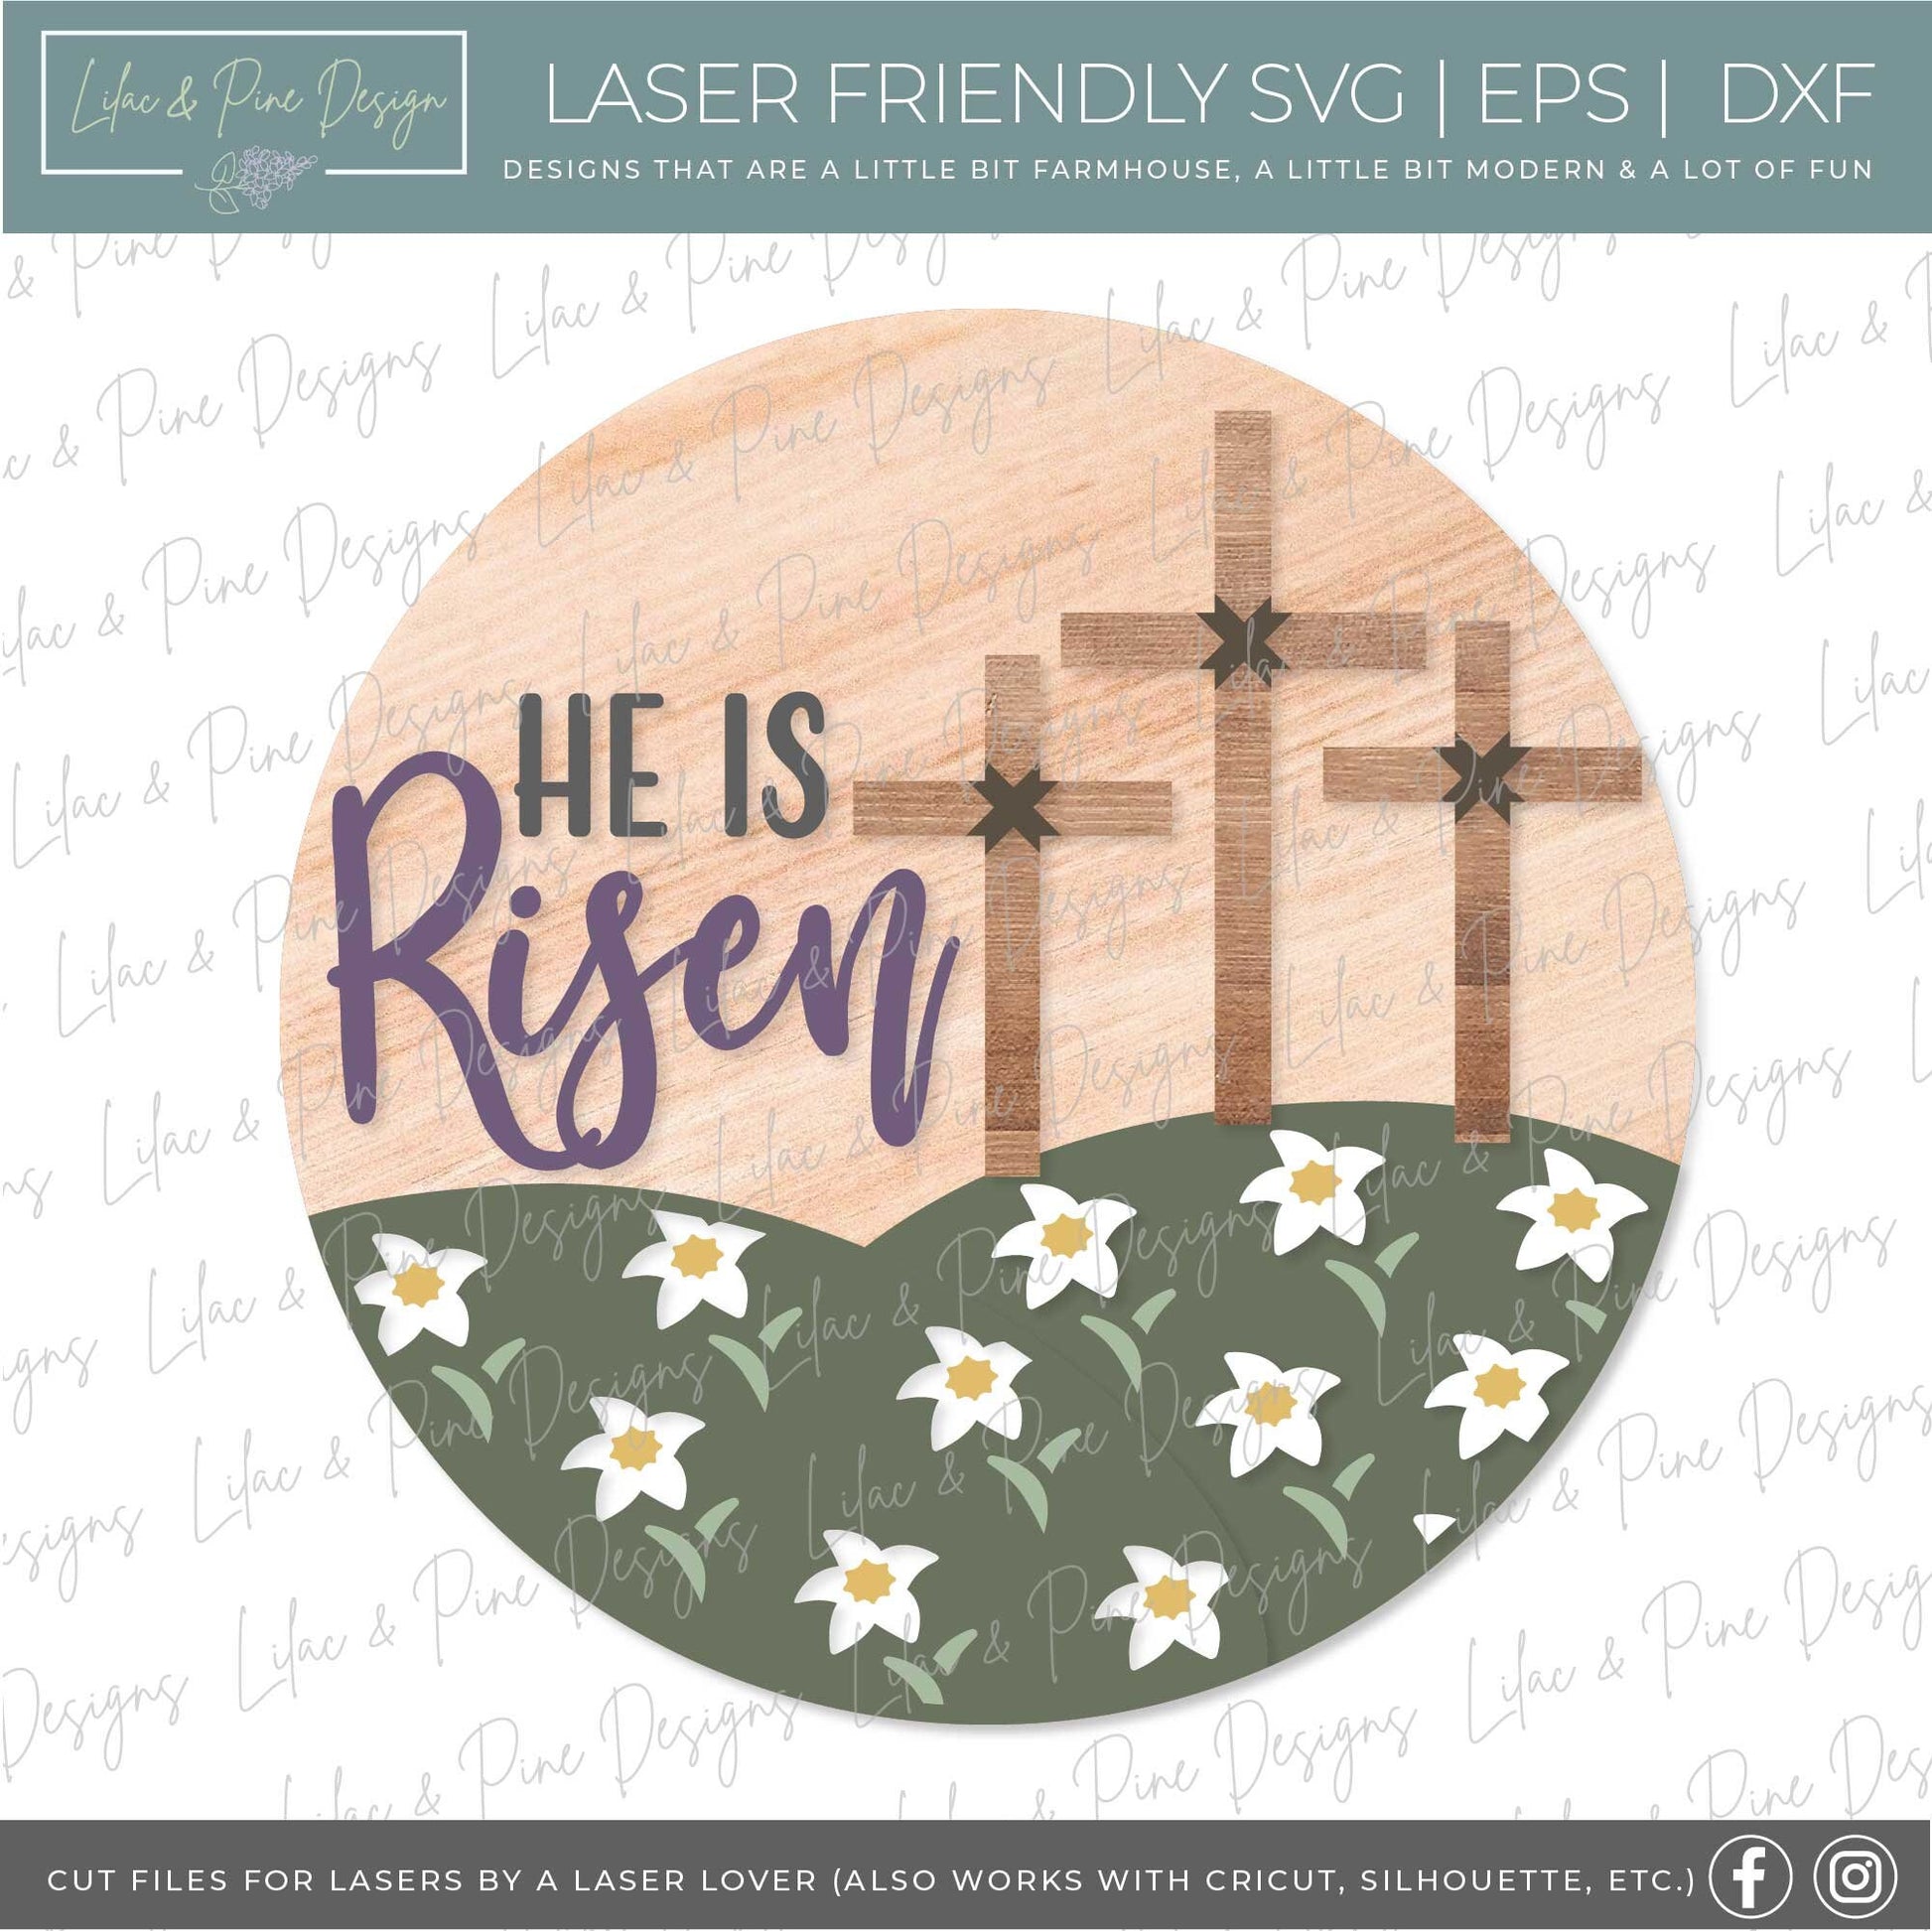 Easter door hanger SVG, He is Risen door hanger, Easter cross Welcome sign SVG, Easter decor, Christian svg, Glowforge SVG, laser cut file